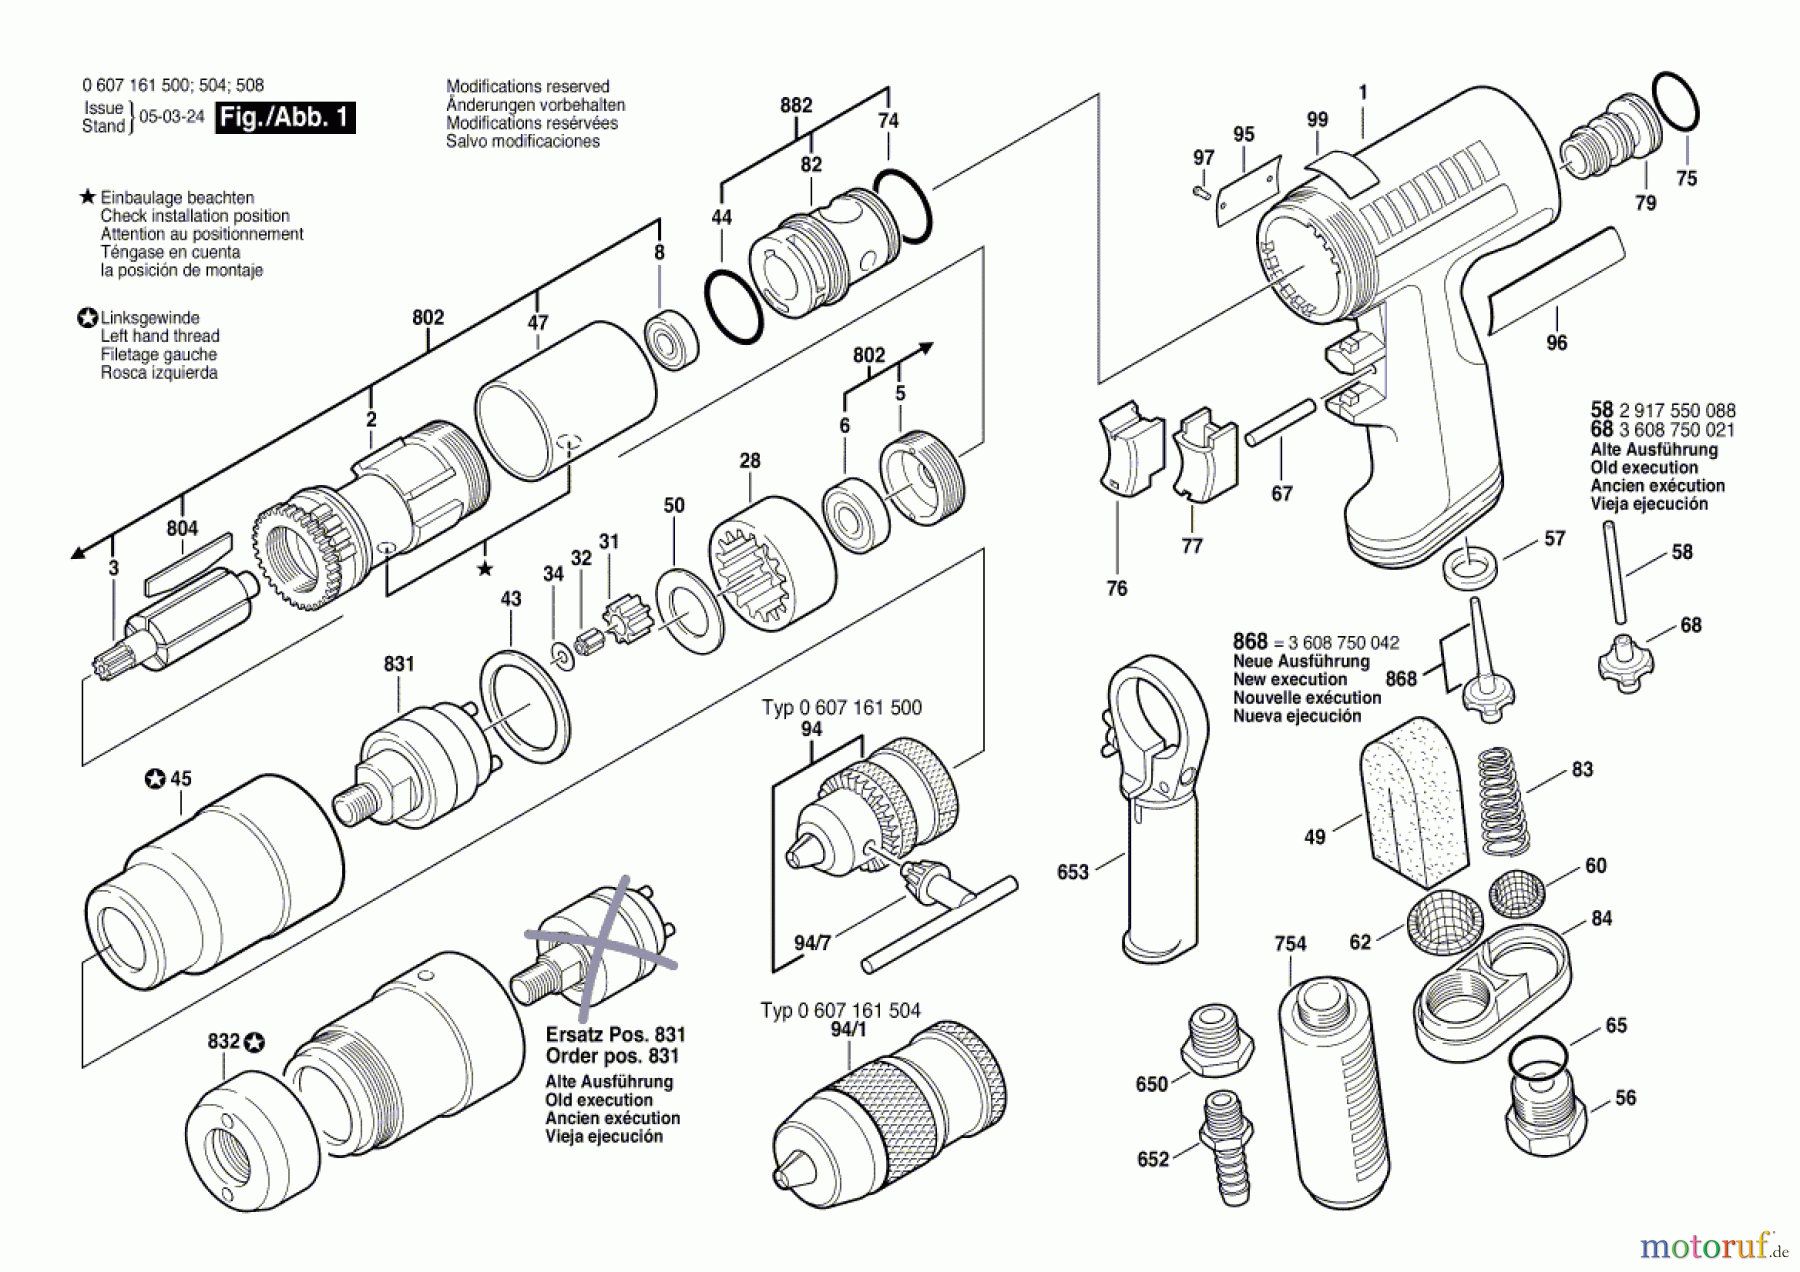  Bosch Werkzeug Pw-Bohrmaschine-Ind 400 WATT-SERIE Seite 1